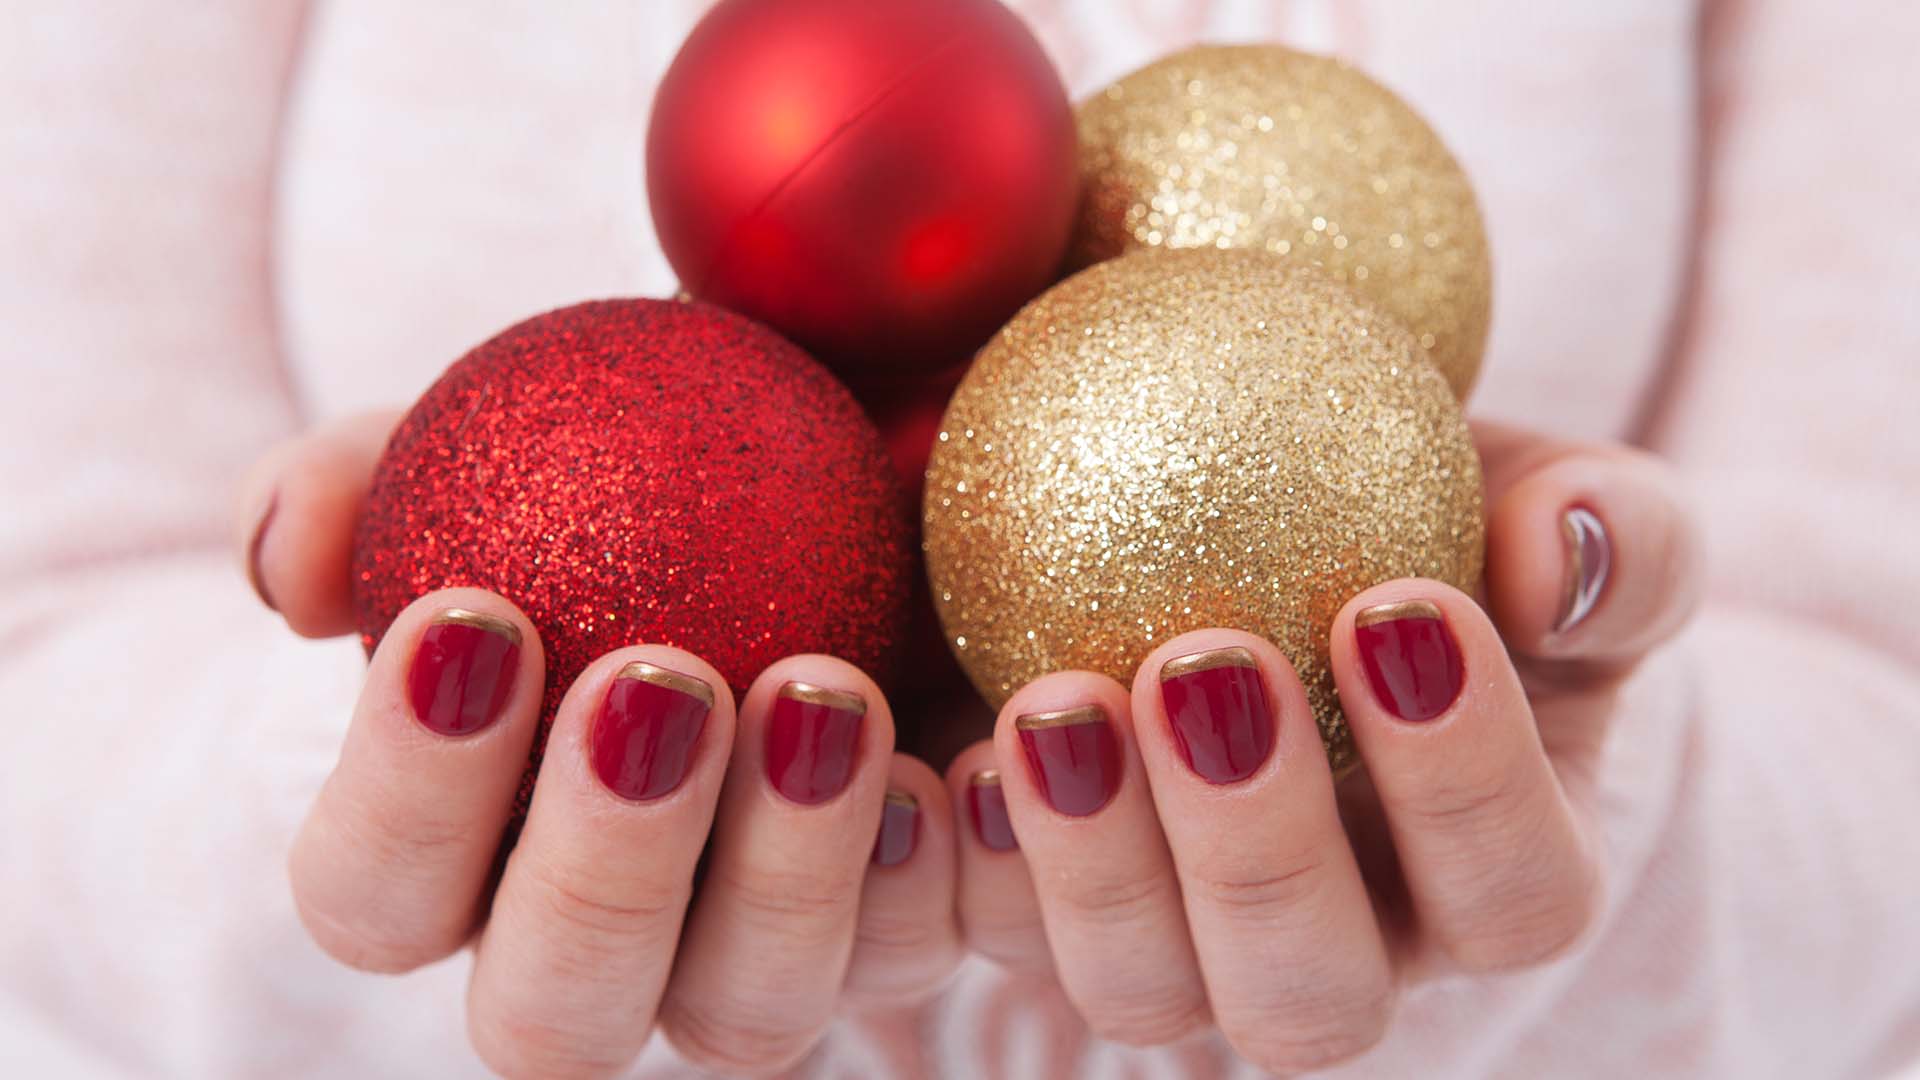 Le feste di Natale sono una buona occasione per sfoggiare unghie a tema natalizio. Qui potrai trovare l’ispirazione che cercavi per le feste.